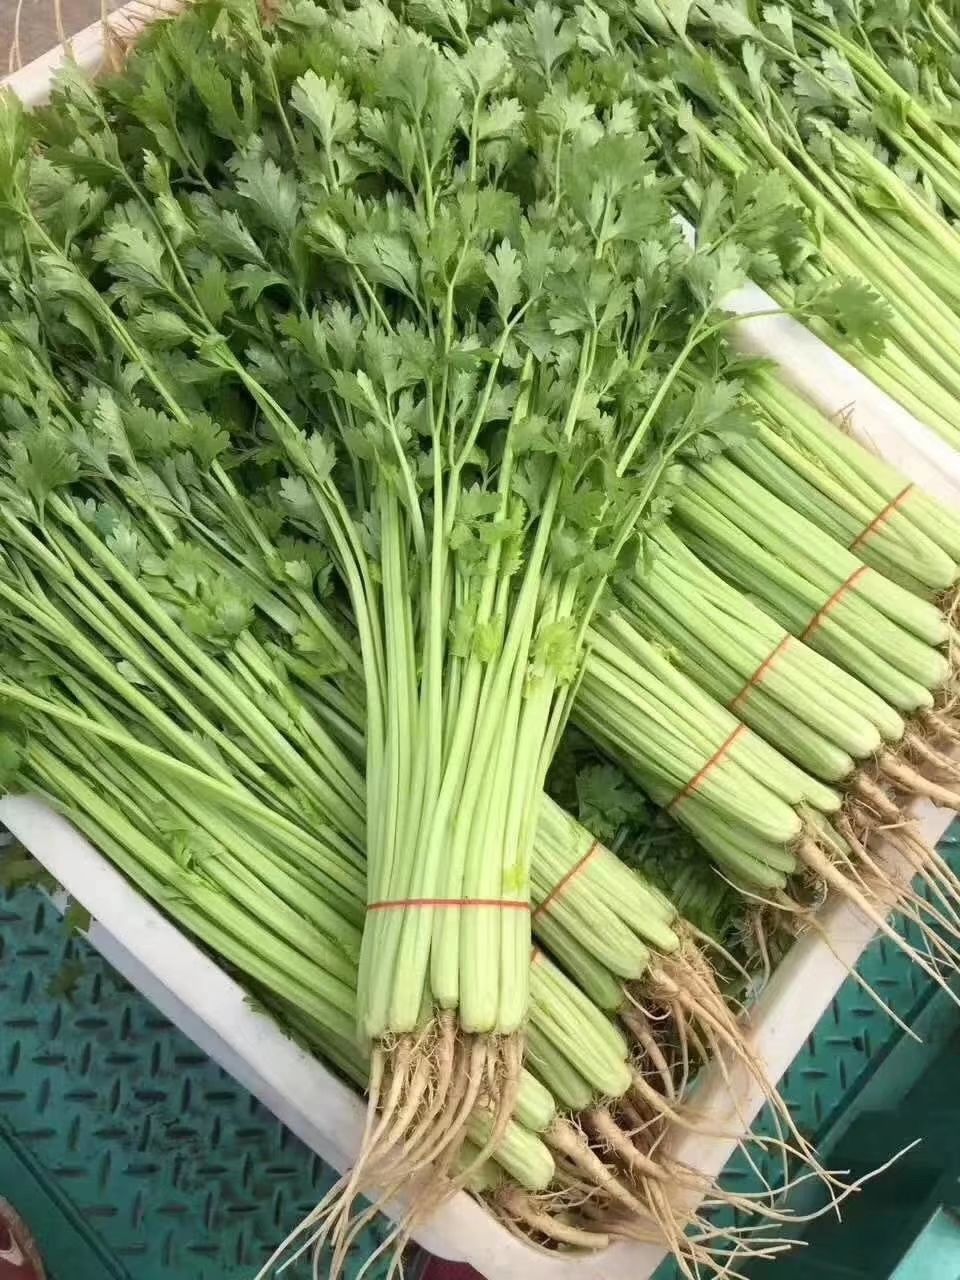 详情 四季小香芹种子 产品特性: 该品种是我公司所培育出的密植小芹菜